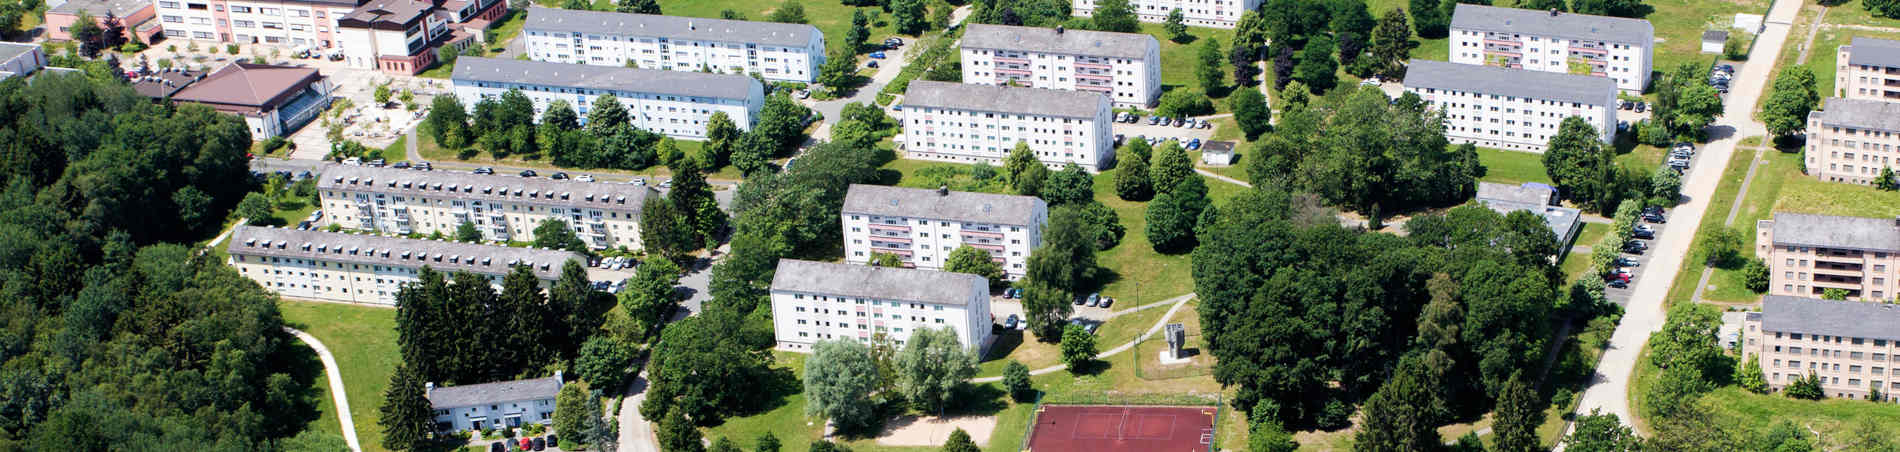 Luftbild Hochschule der Polizei Rheinland-Pfalz